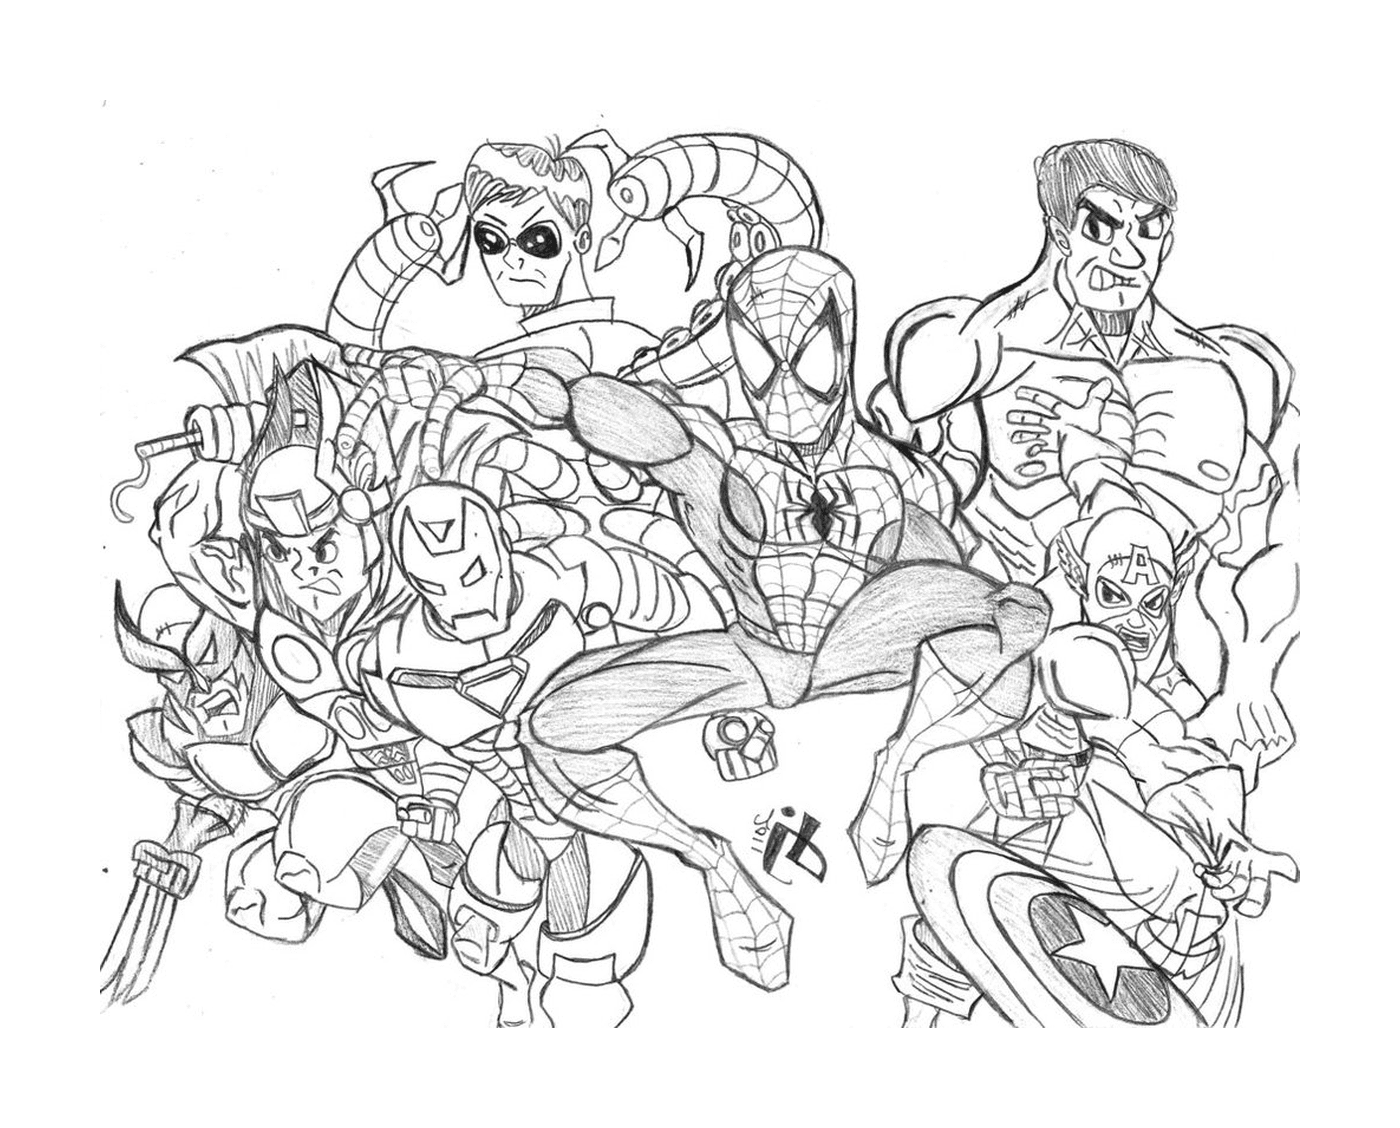   Un groupe de super-héros dessiné 